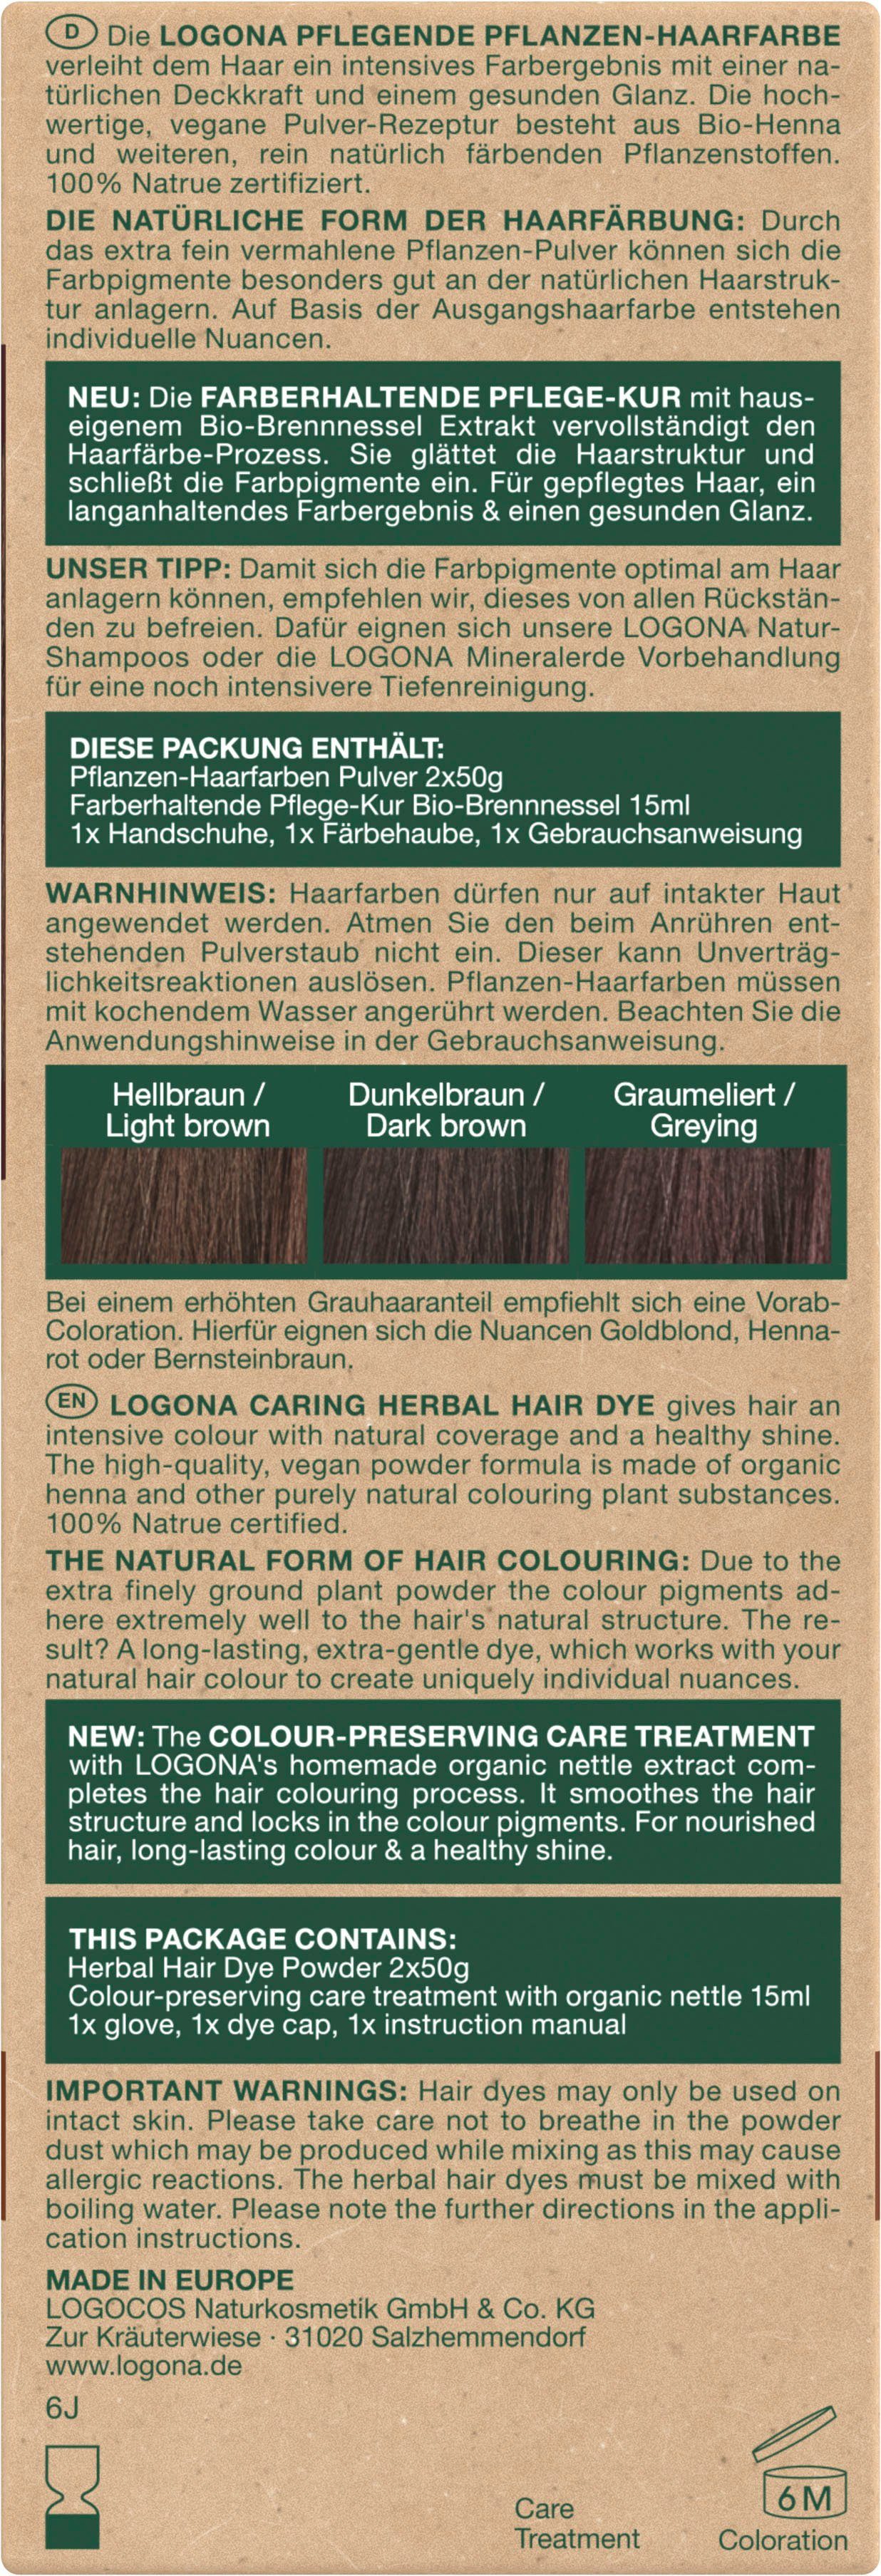 LOGONA Haarfarbe Pflanzen-Haarfarbe 10 Kaffeebraun Pulver